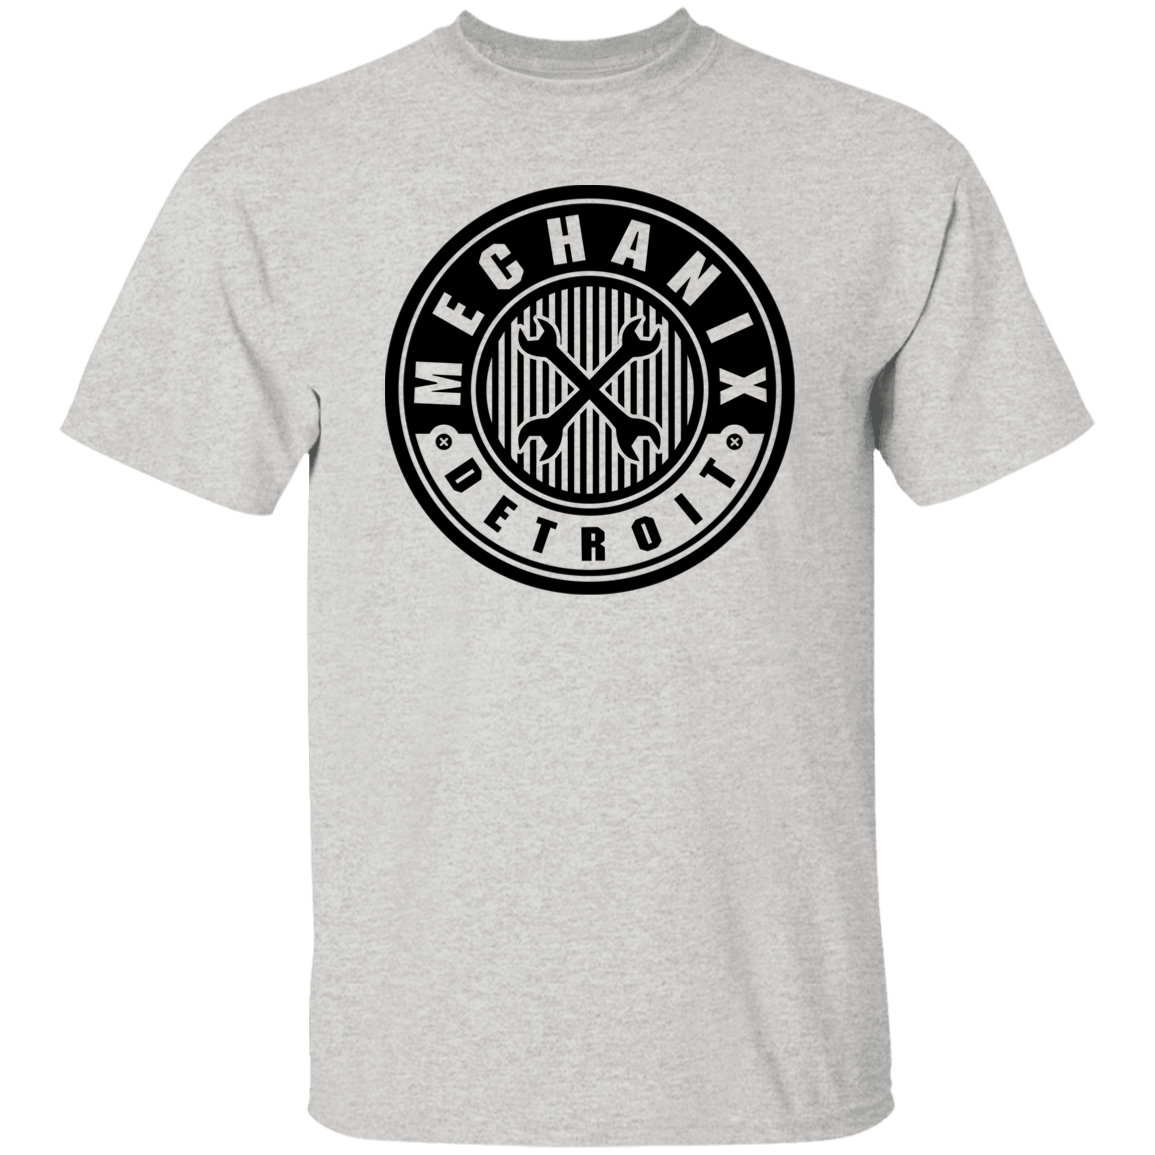 Detroit Mechanix T-Shirt